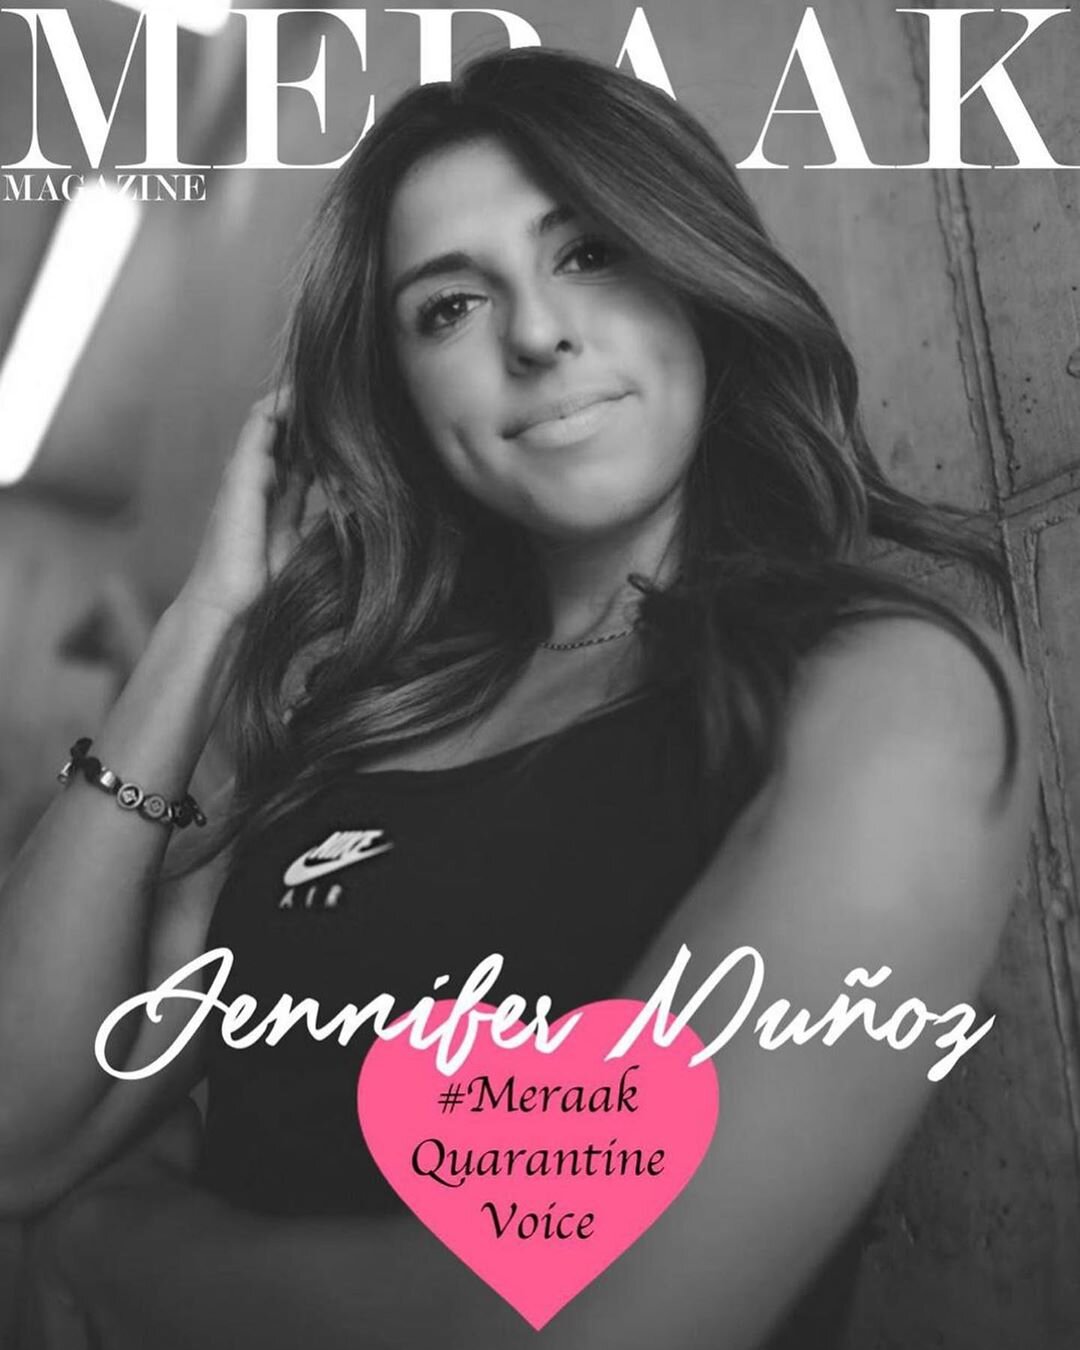 ¿Quién es Jennifer Muñoz, futbolista que pide no sexualizar a jugadoras